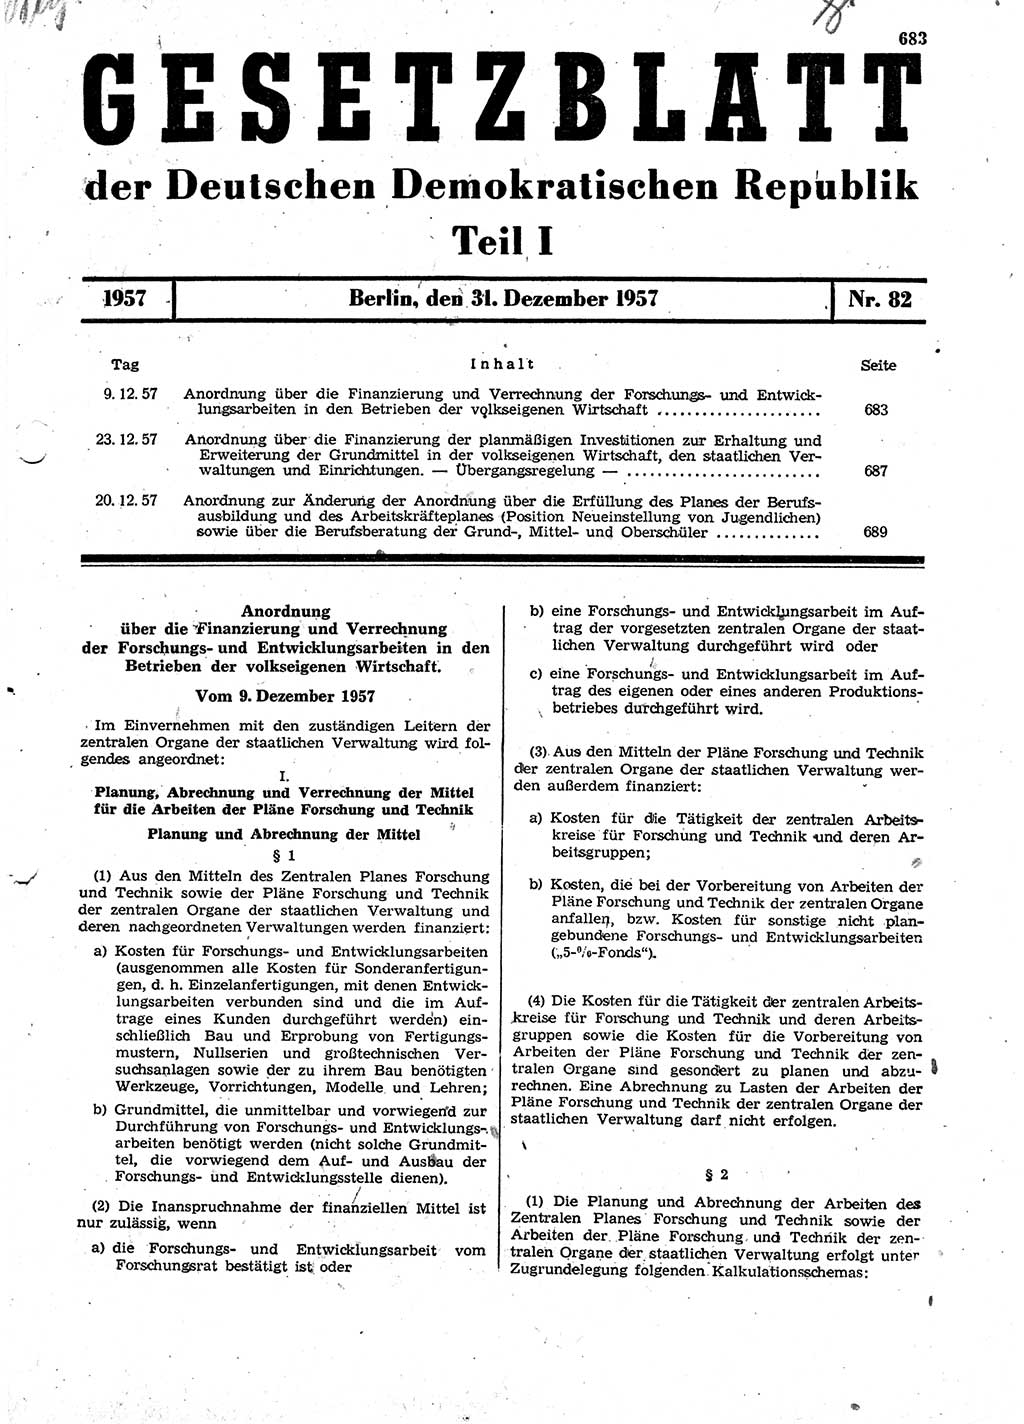 Gesetzblatt (GBl.) der Deutschen Demokratischen Republik (DDR) Teil Ⅰ 1957, Seite 683 (GBl. DDR Ⅰ 1957, S. 683)